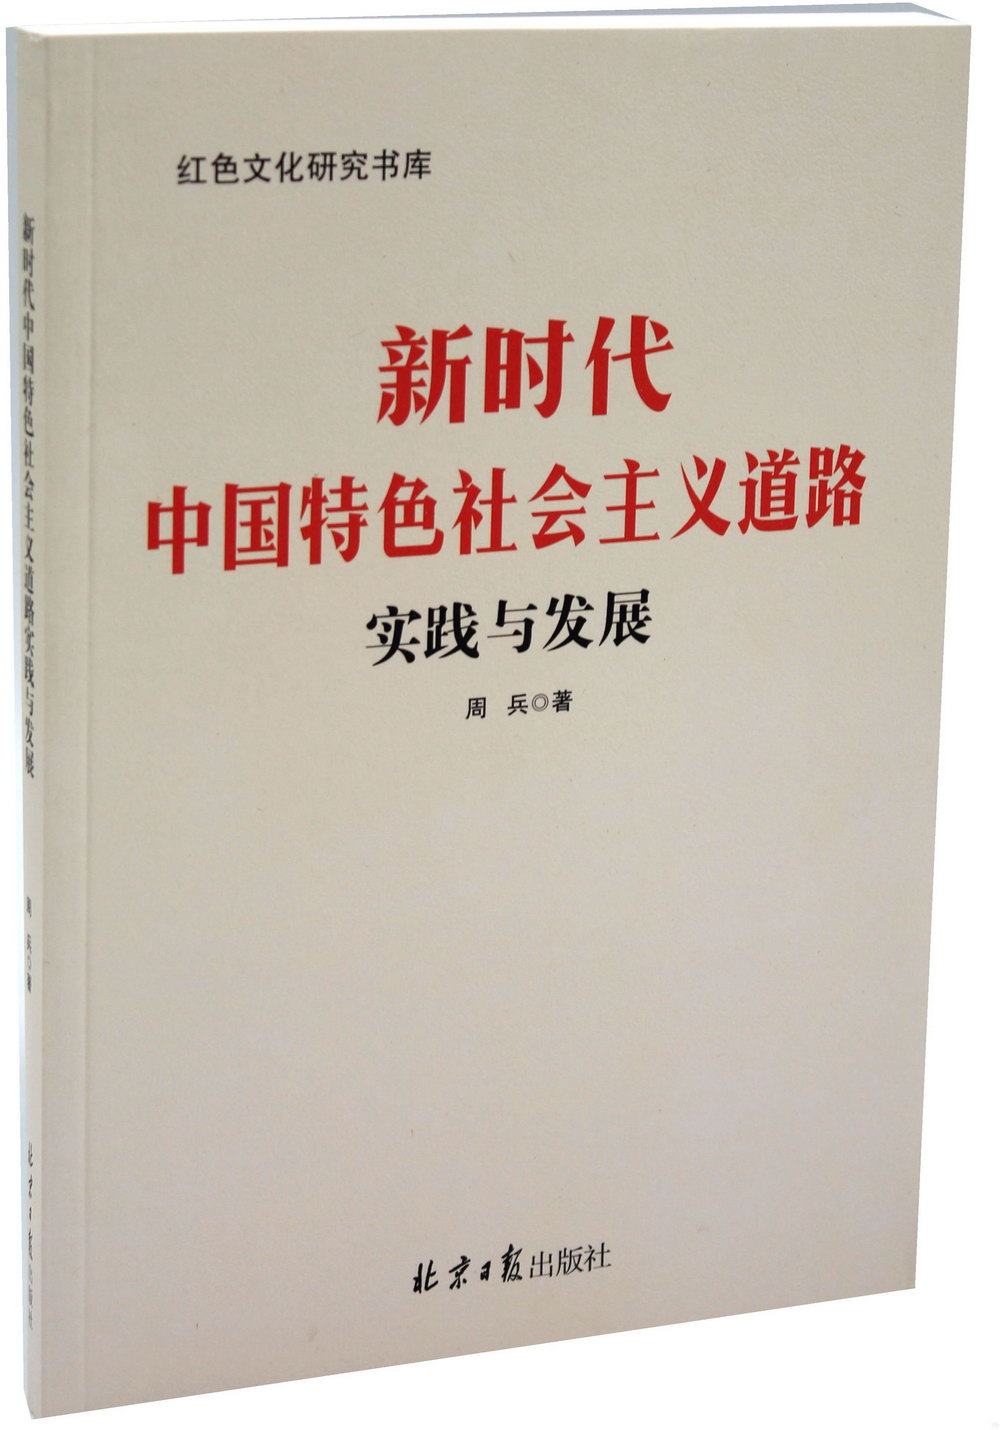 新時代中國特色社會主義道路實踐與發展